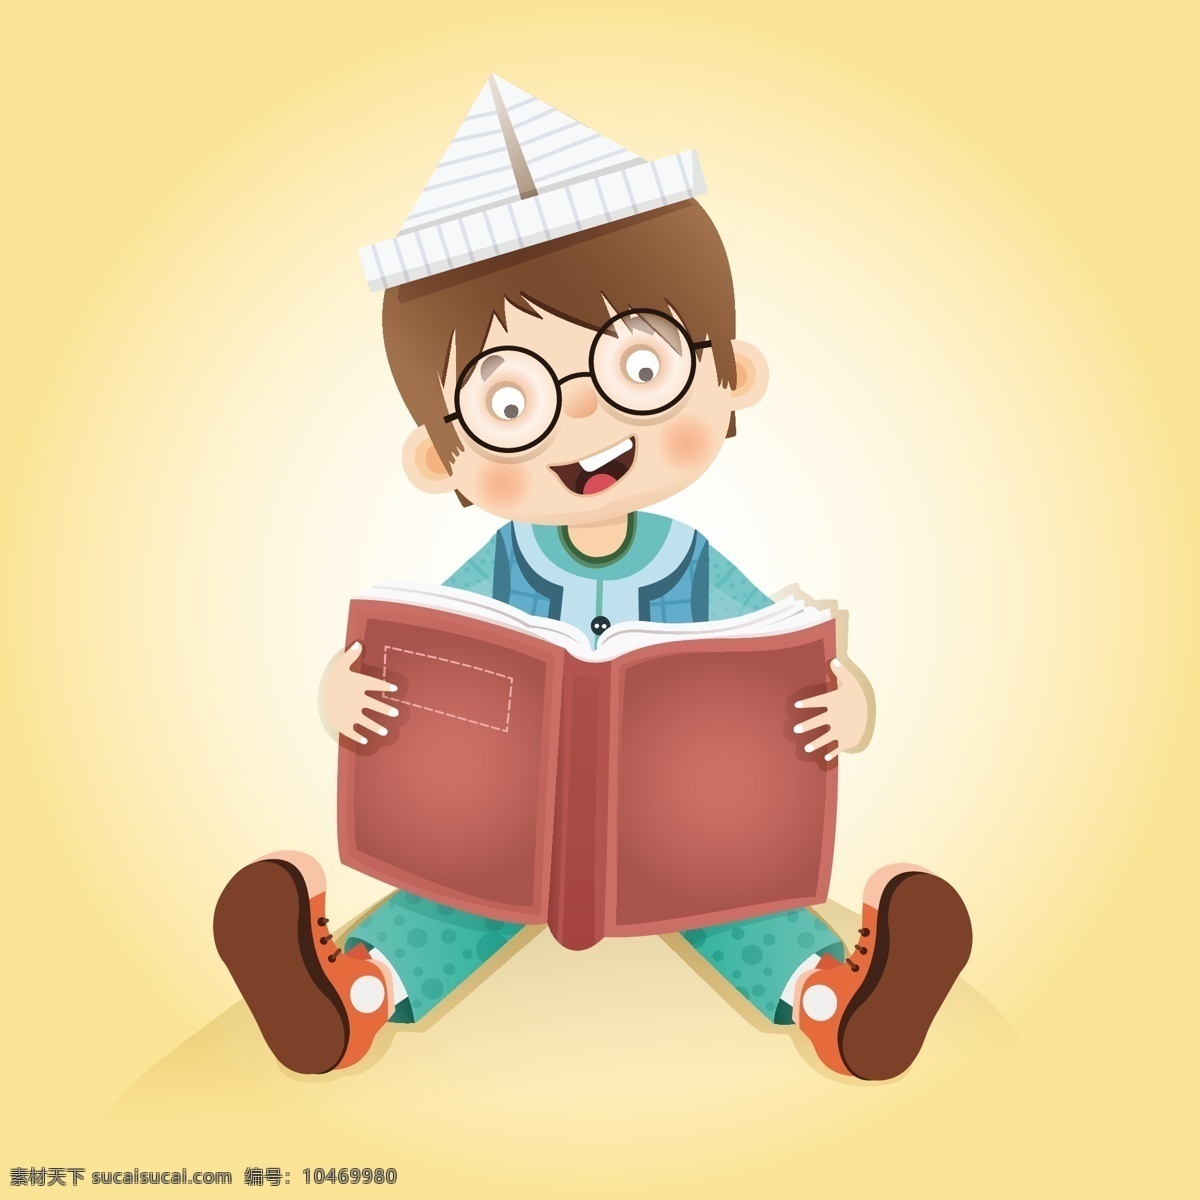 读书 教育 小孩看书 儿童教育 学习 阅读 书本 图书 education 图书logo 卡通设计